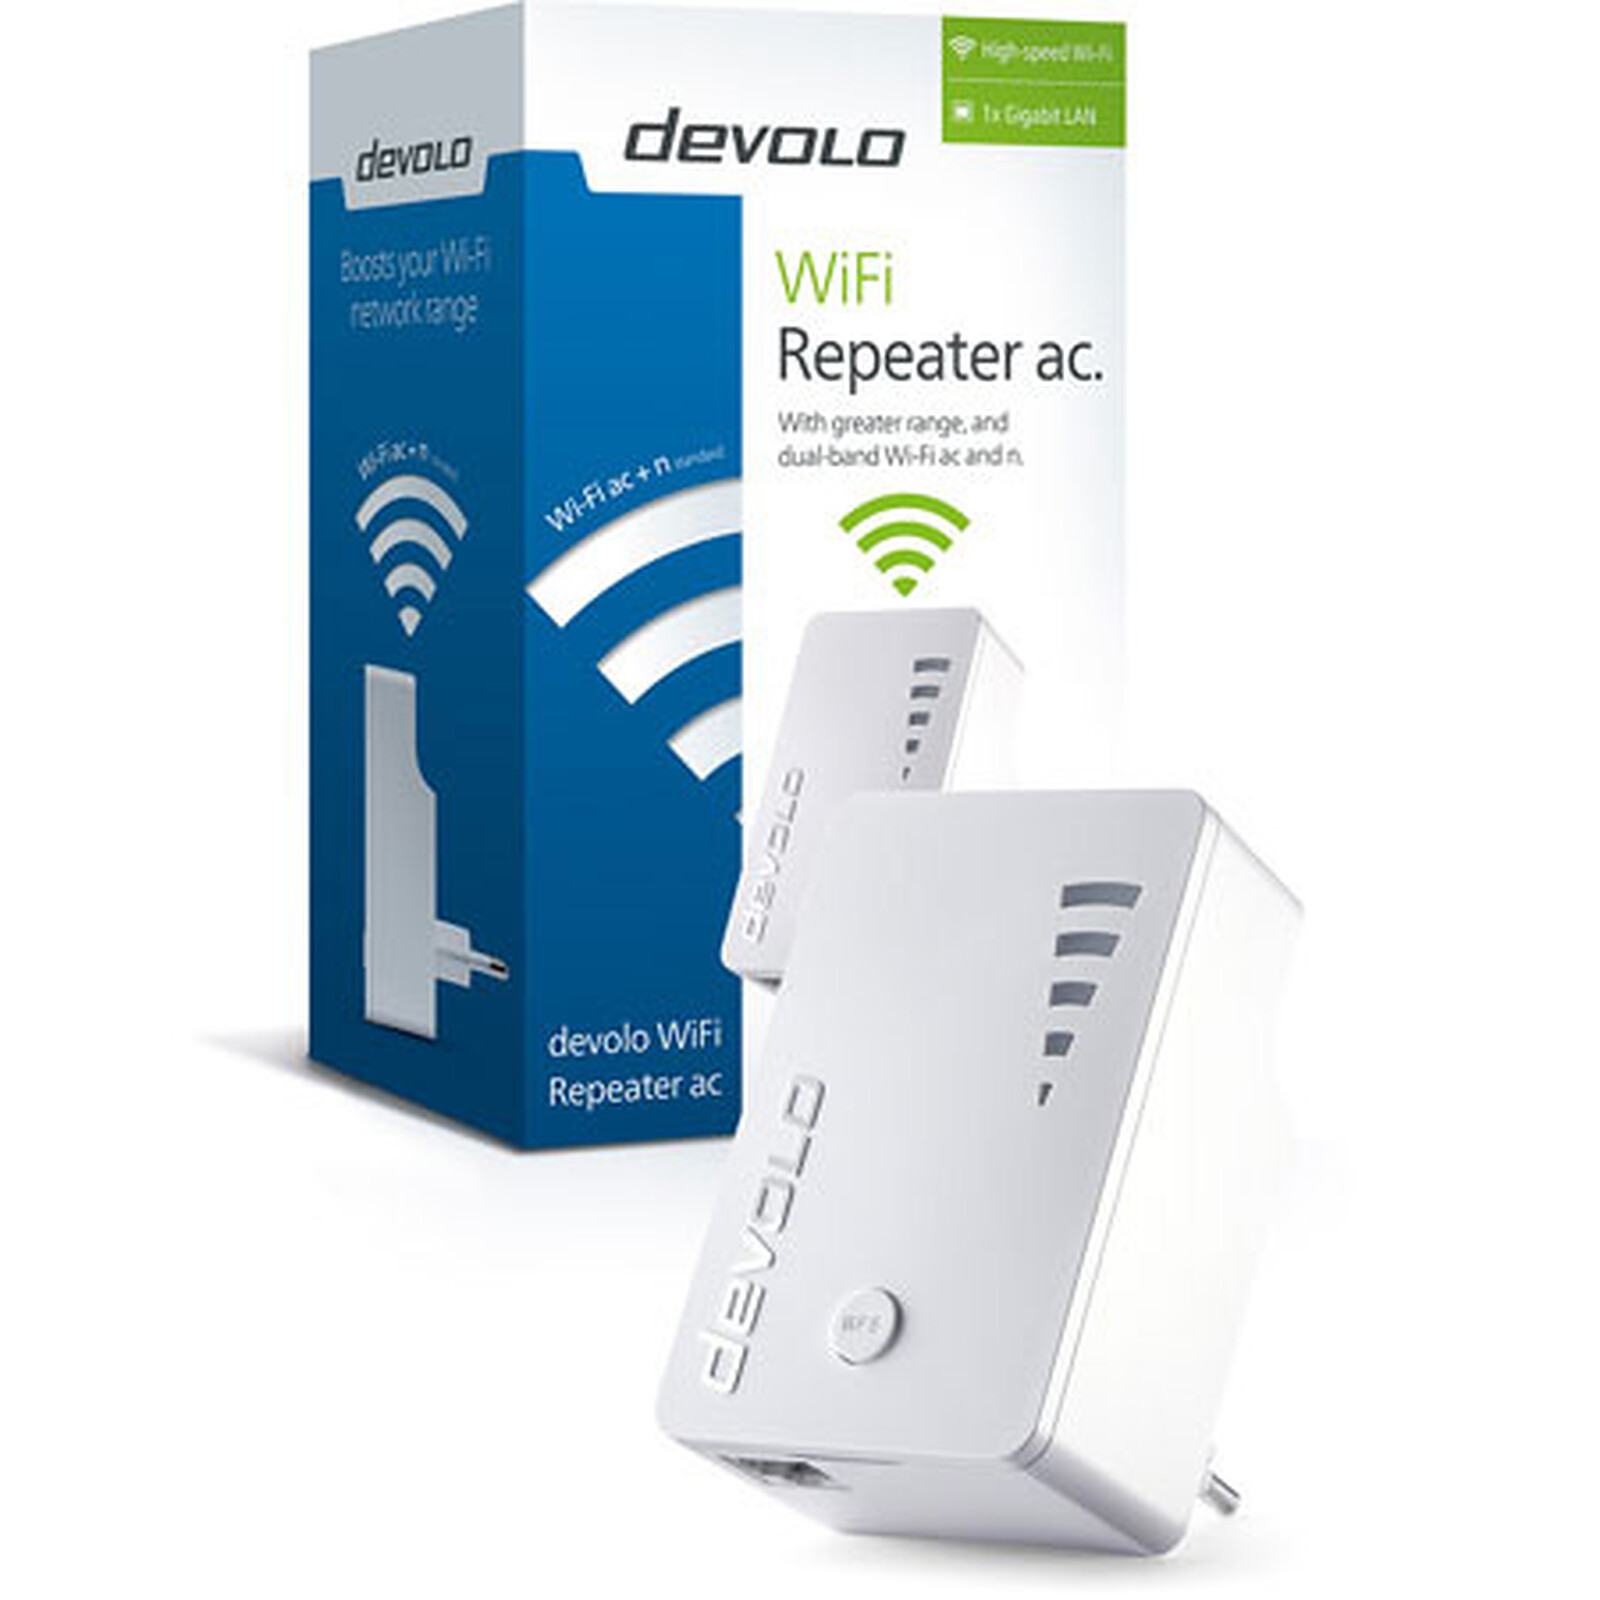 Verwisselbaar ruilen Nationale volkstelling Devolo dLAN 1200 Wi-Fi AC (9790) - Wi-Fi repeater Devolo AG on LDLC